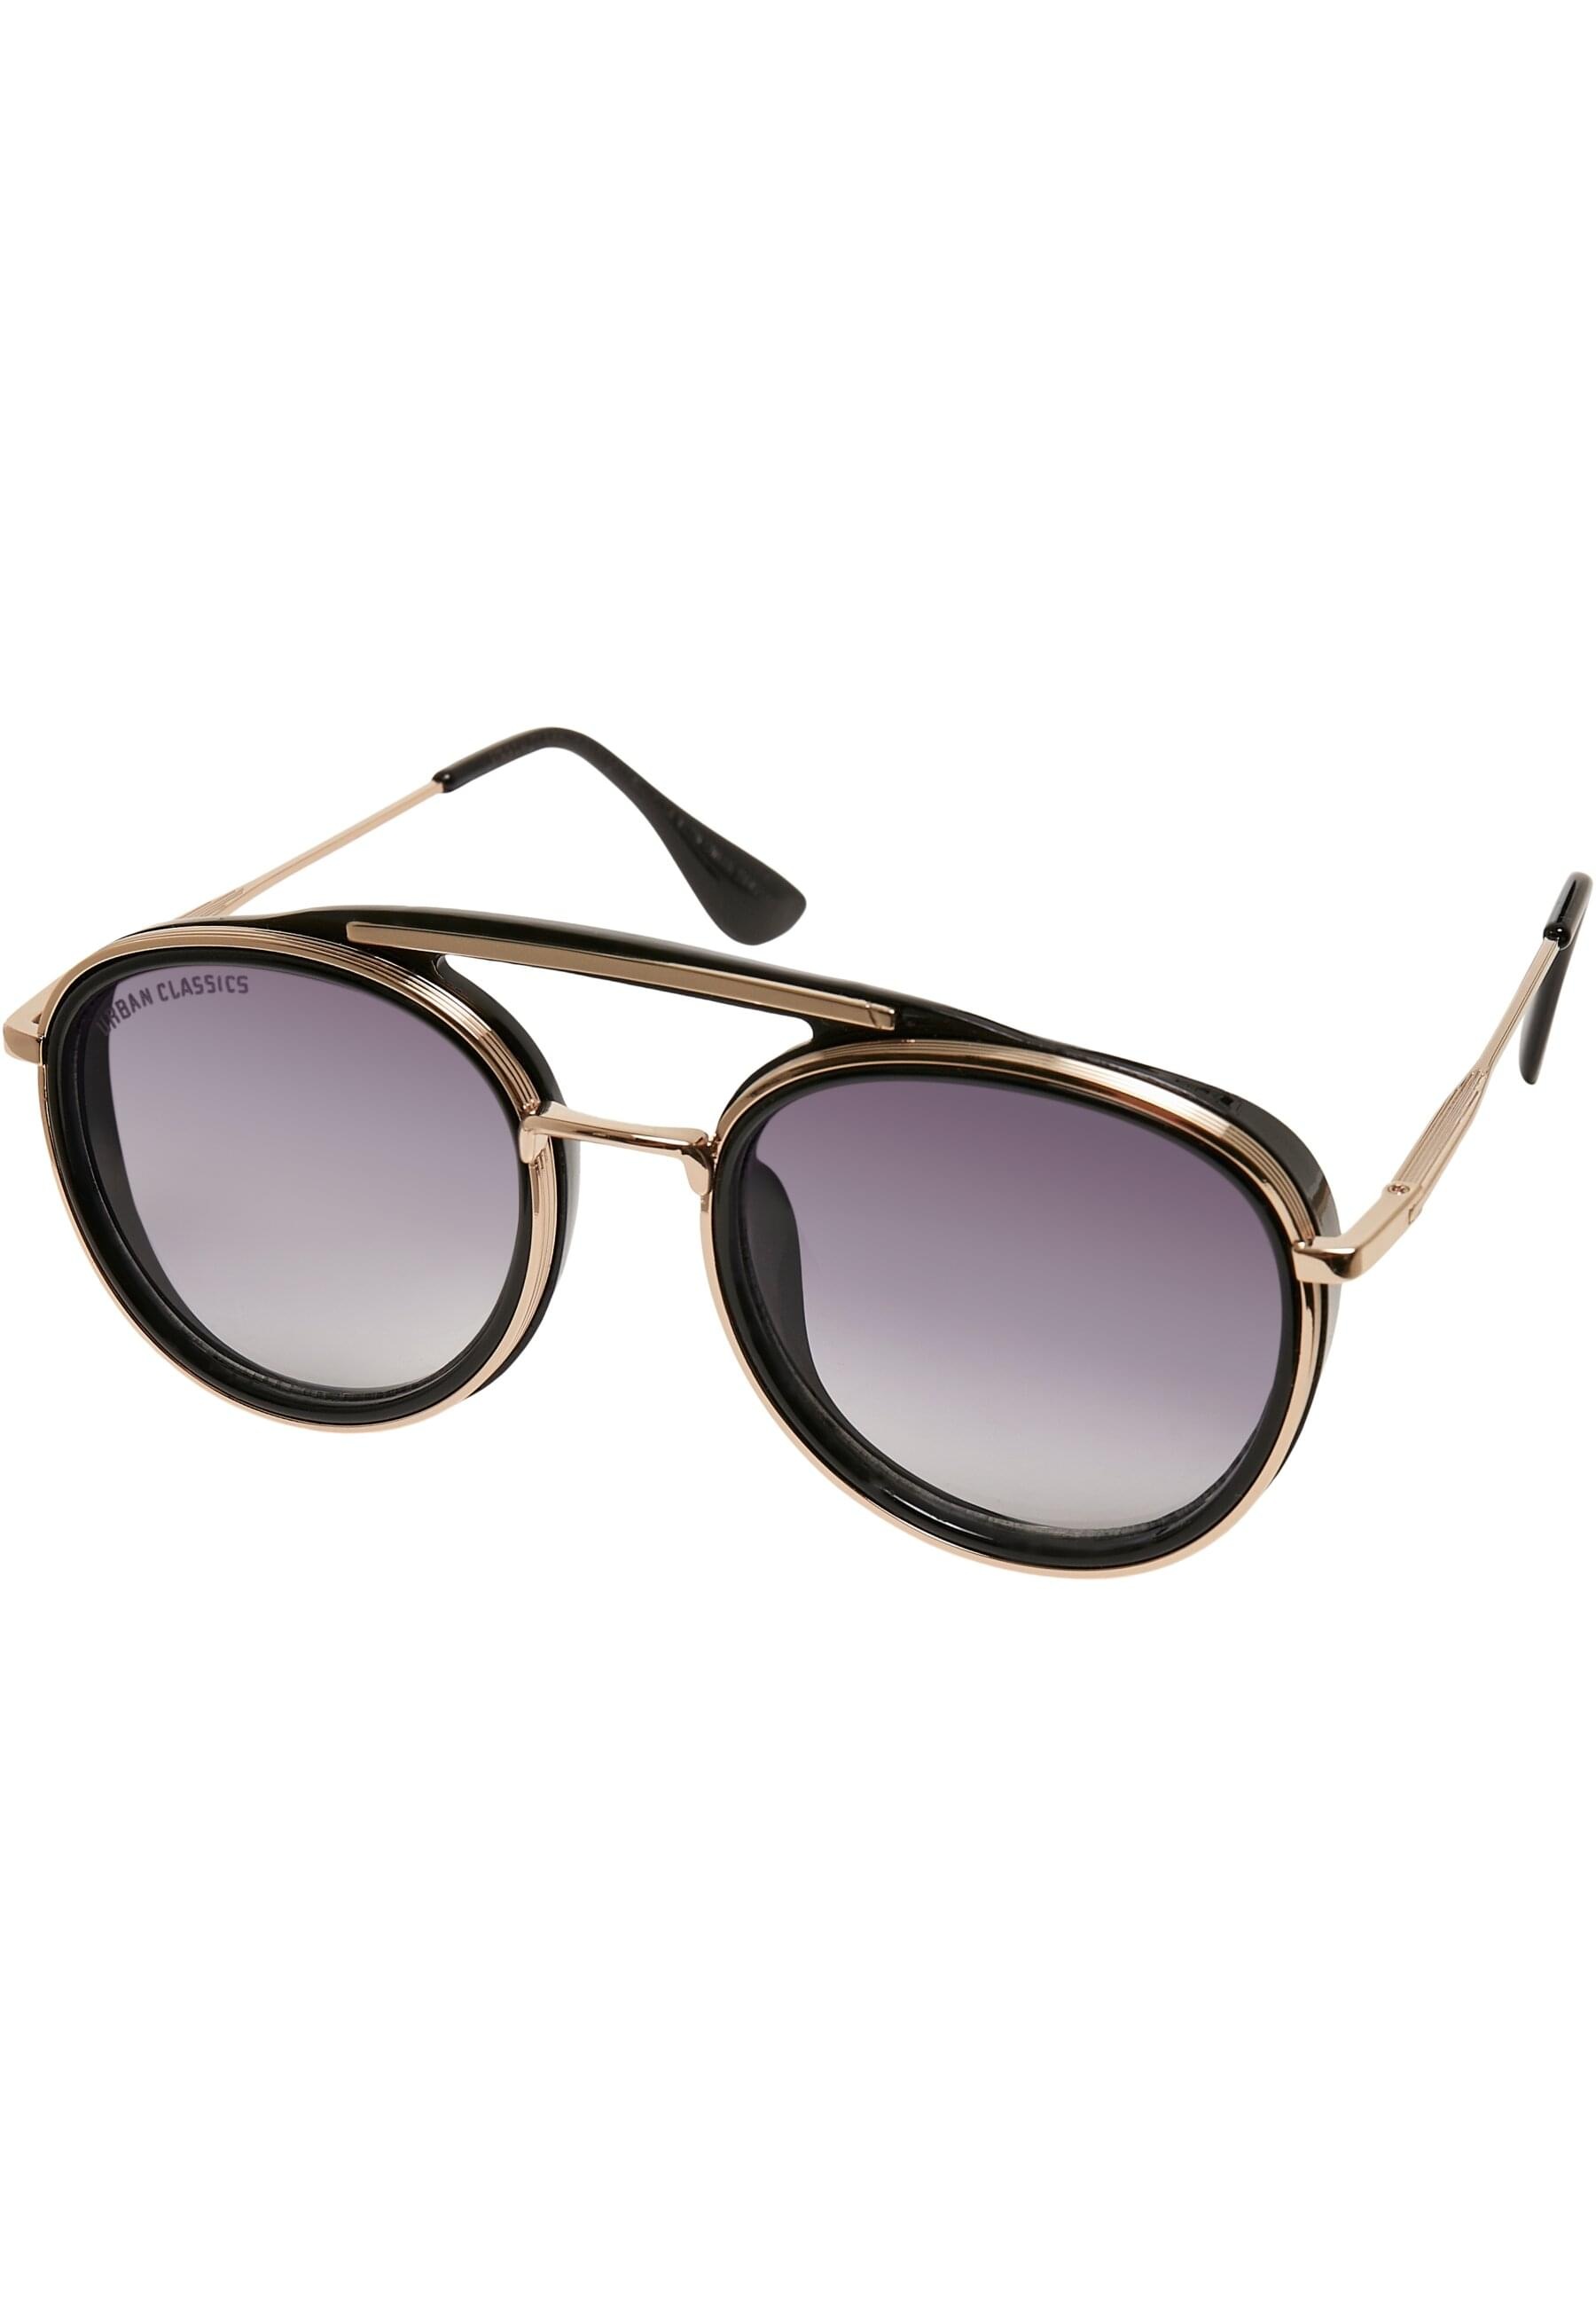 URBAN CLASSICS Sonnenbrille »Unisex Chain« BAUR Sunglasses Ibiza kaufen | With online